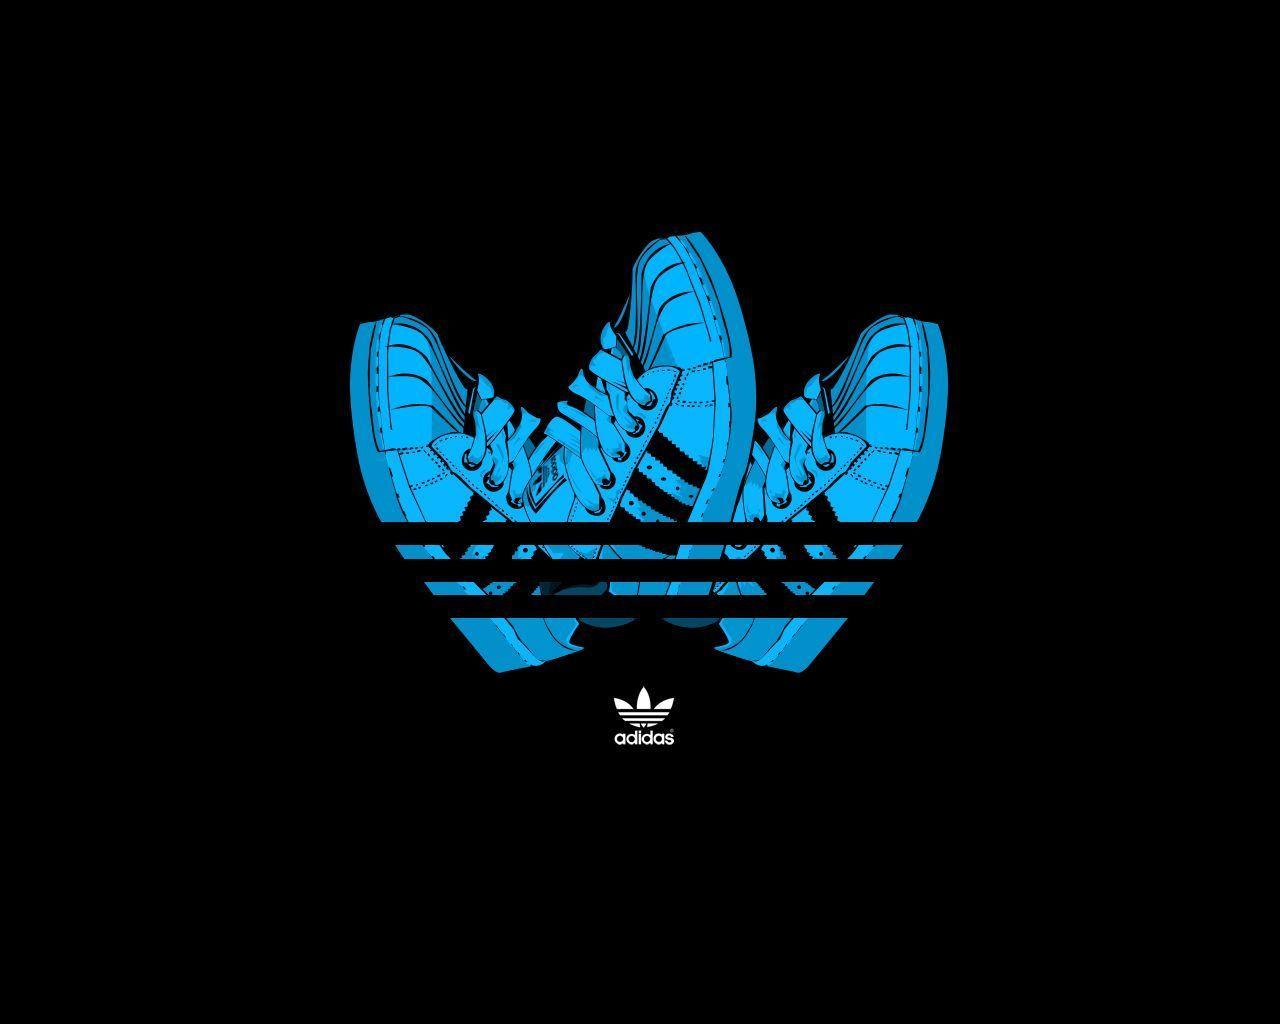 Hình nền  Adidas nhãn hiệu Logo Đầy màu sắc Âm nhạc Nền đơn giản Chủ  nghĩa tối giản 4000x2500  libraryfire  2217506  Hình nền đẹp hd   WallHere